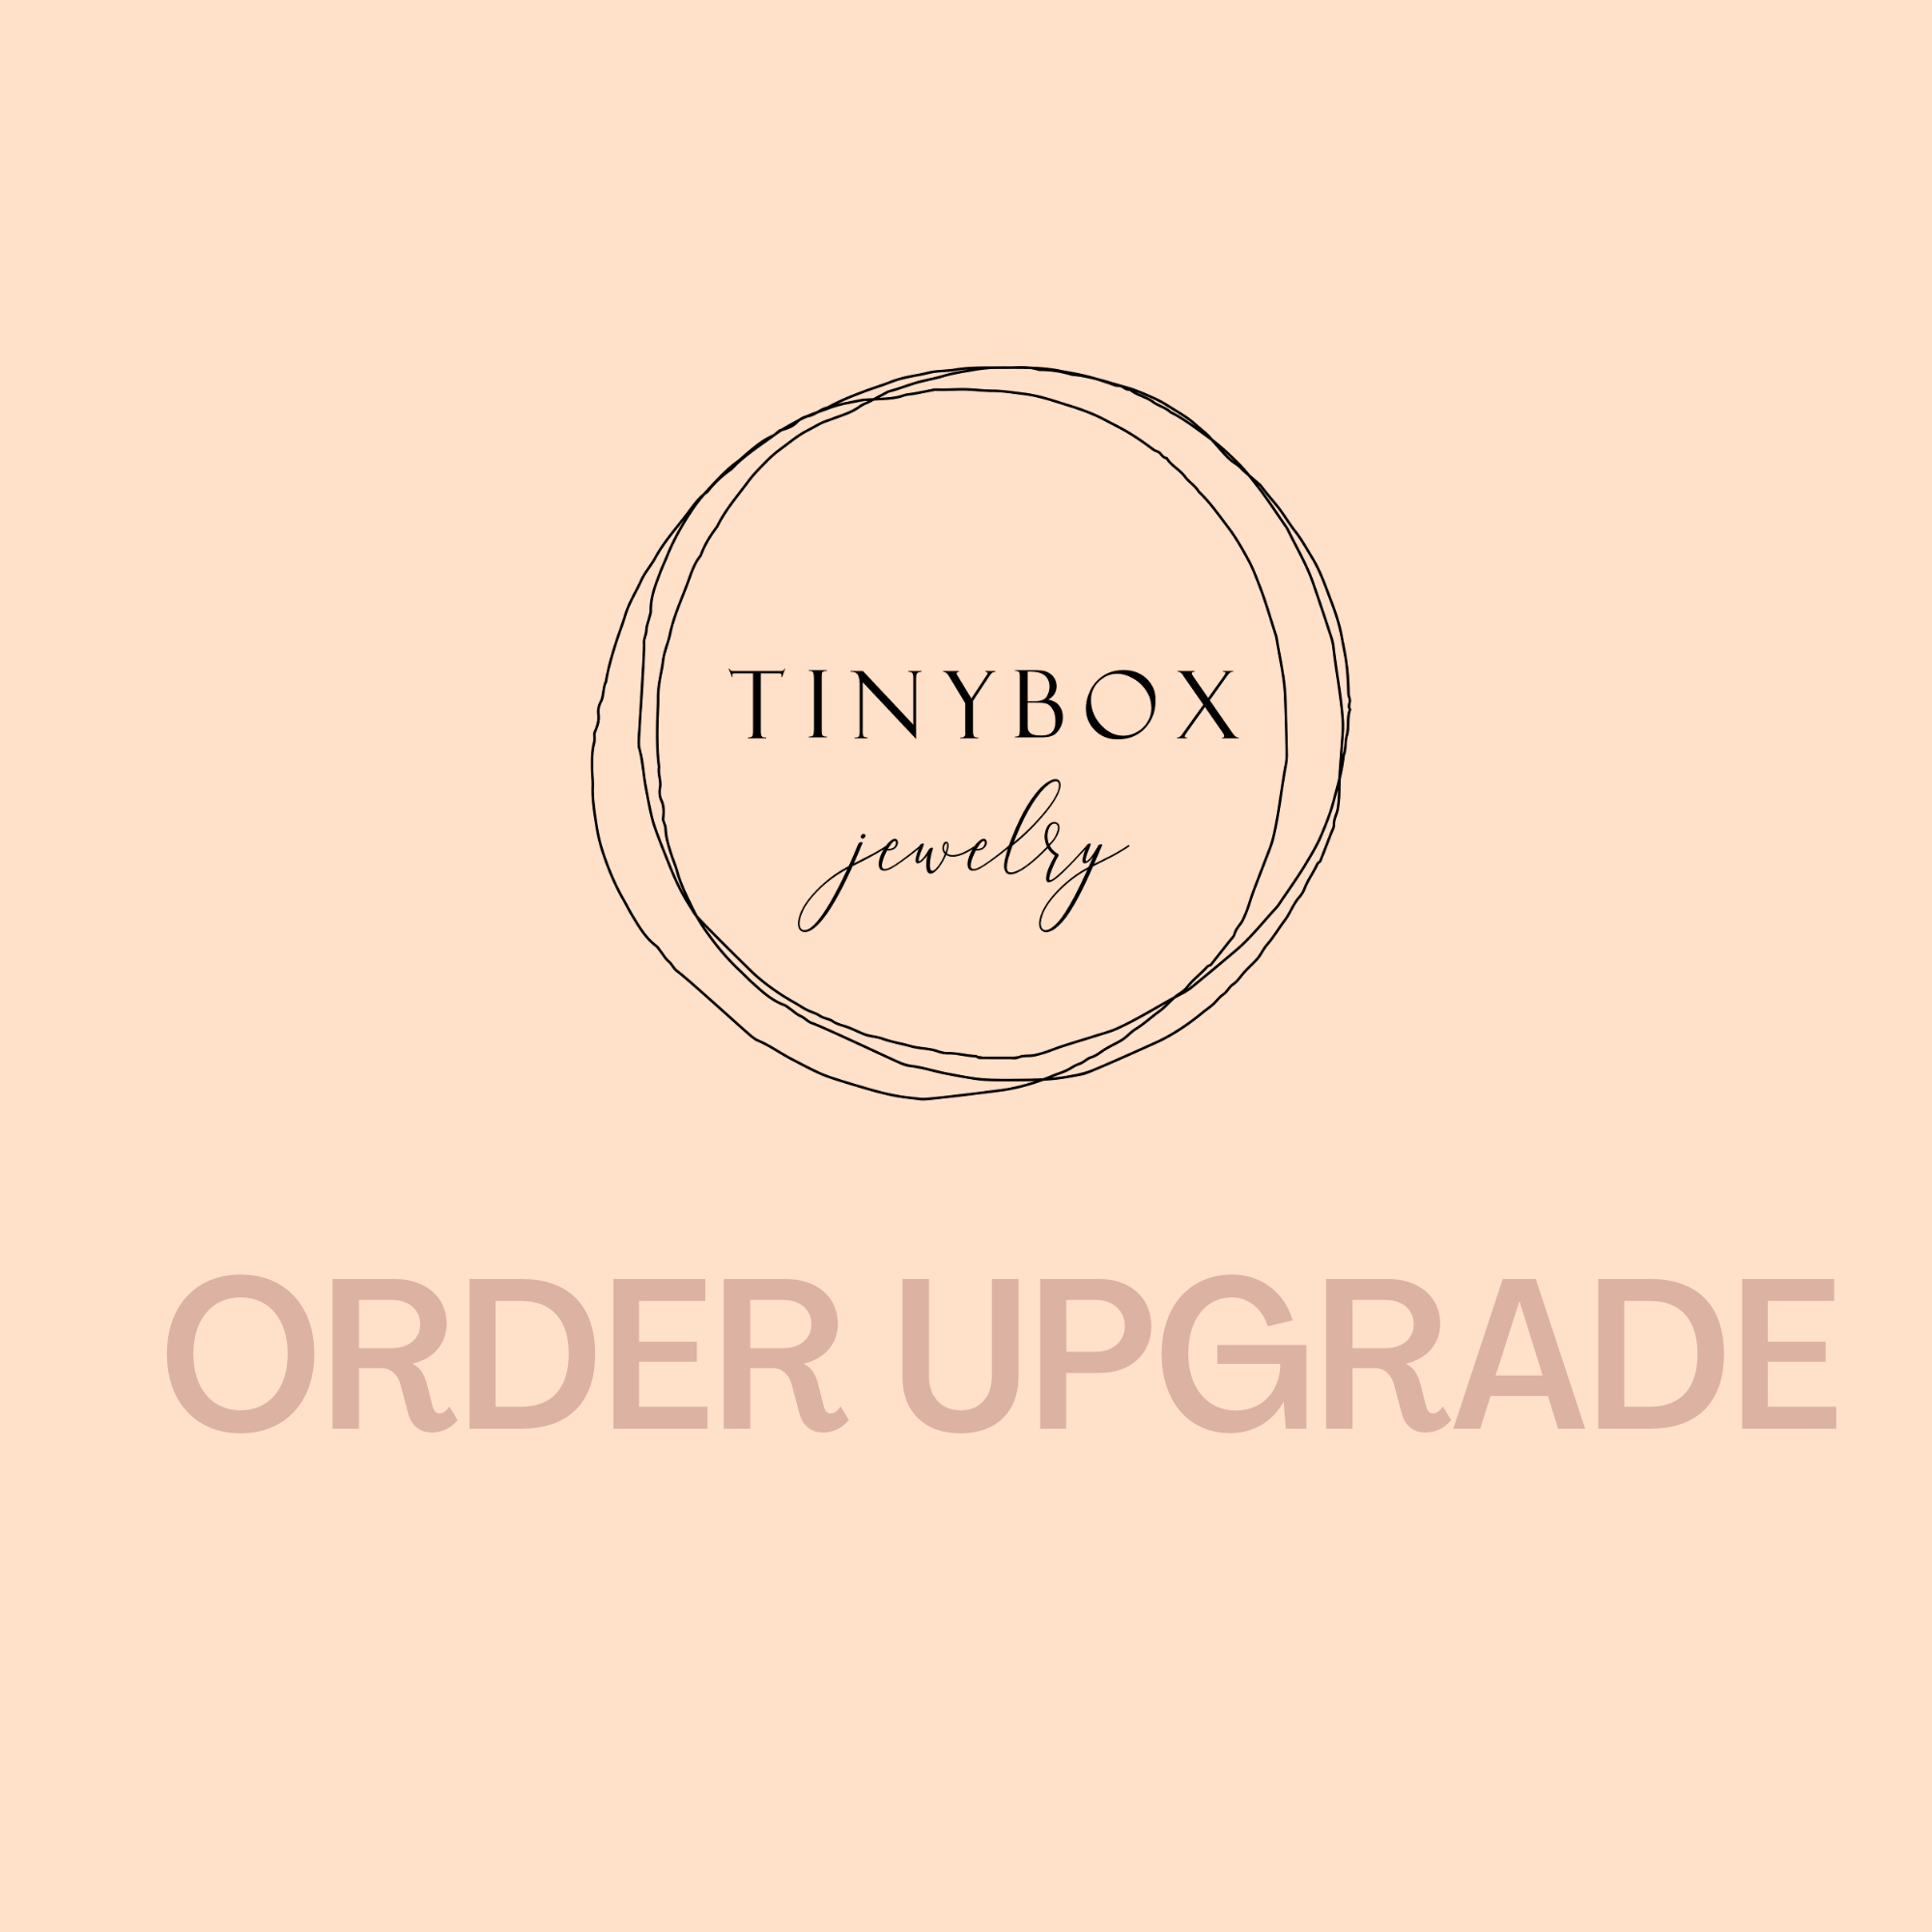 Order Upgrade - TinyBox Jewelry